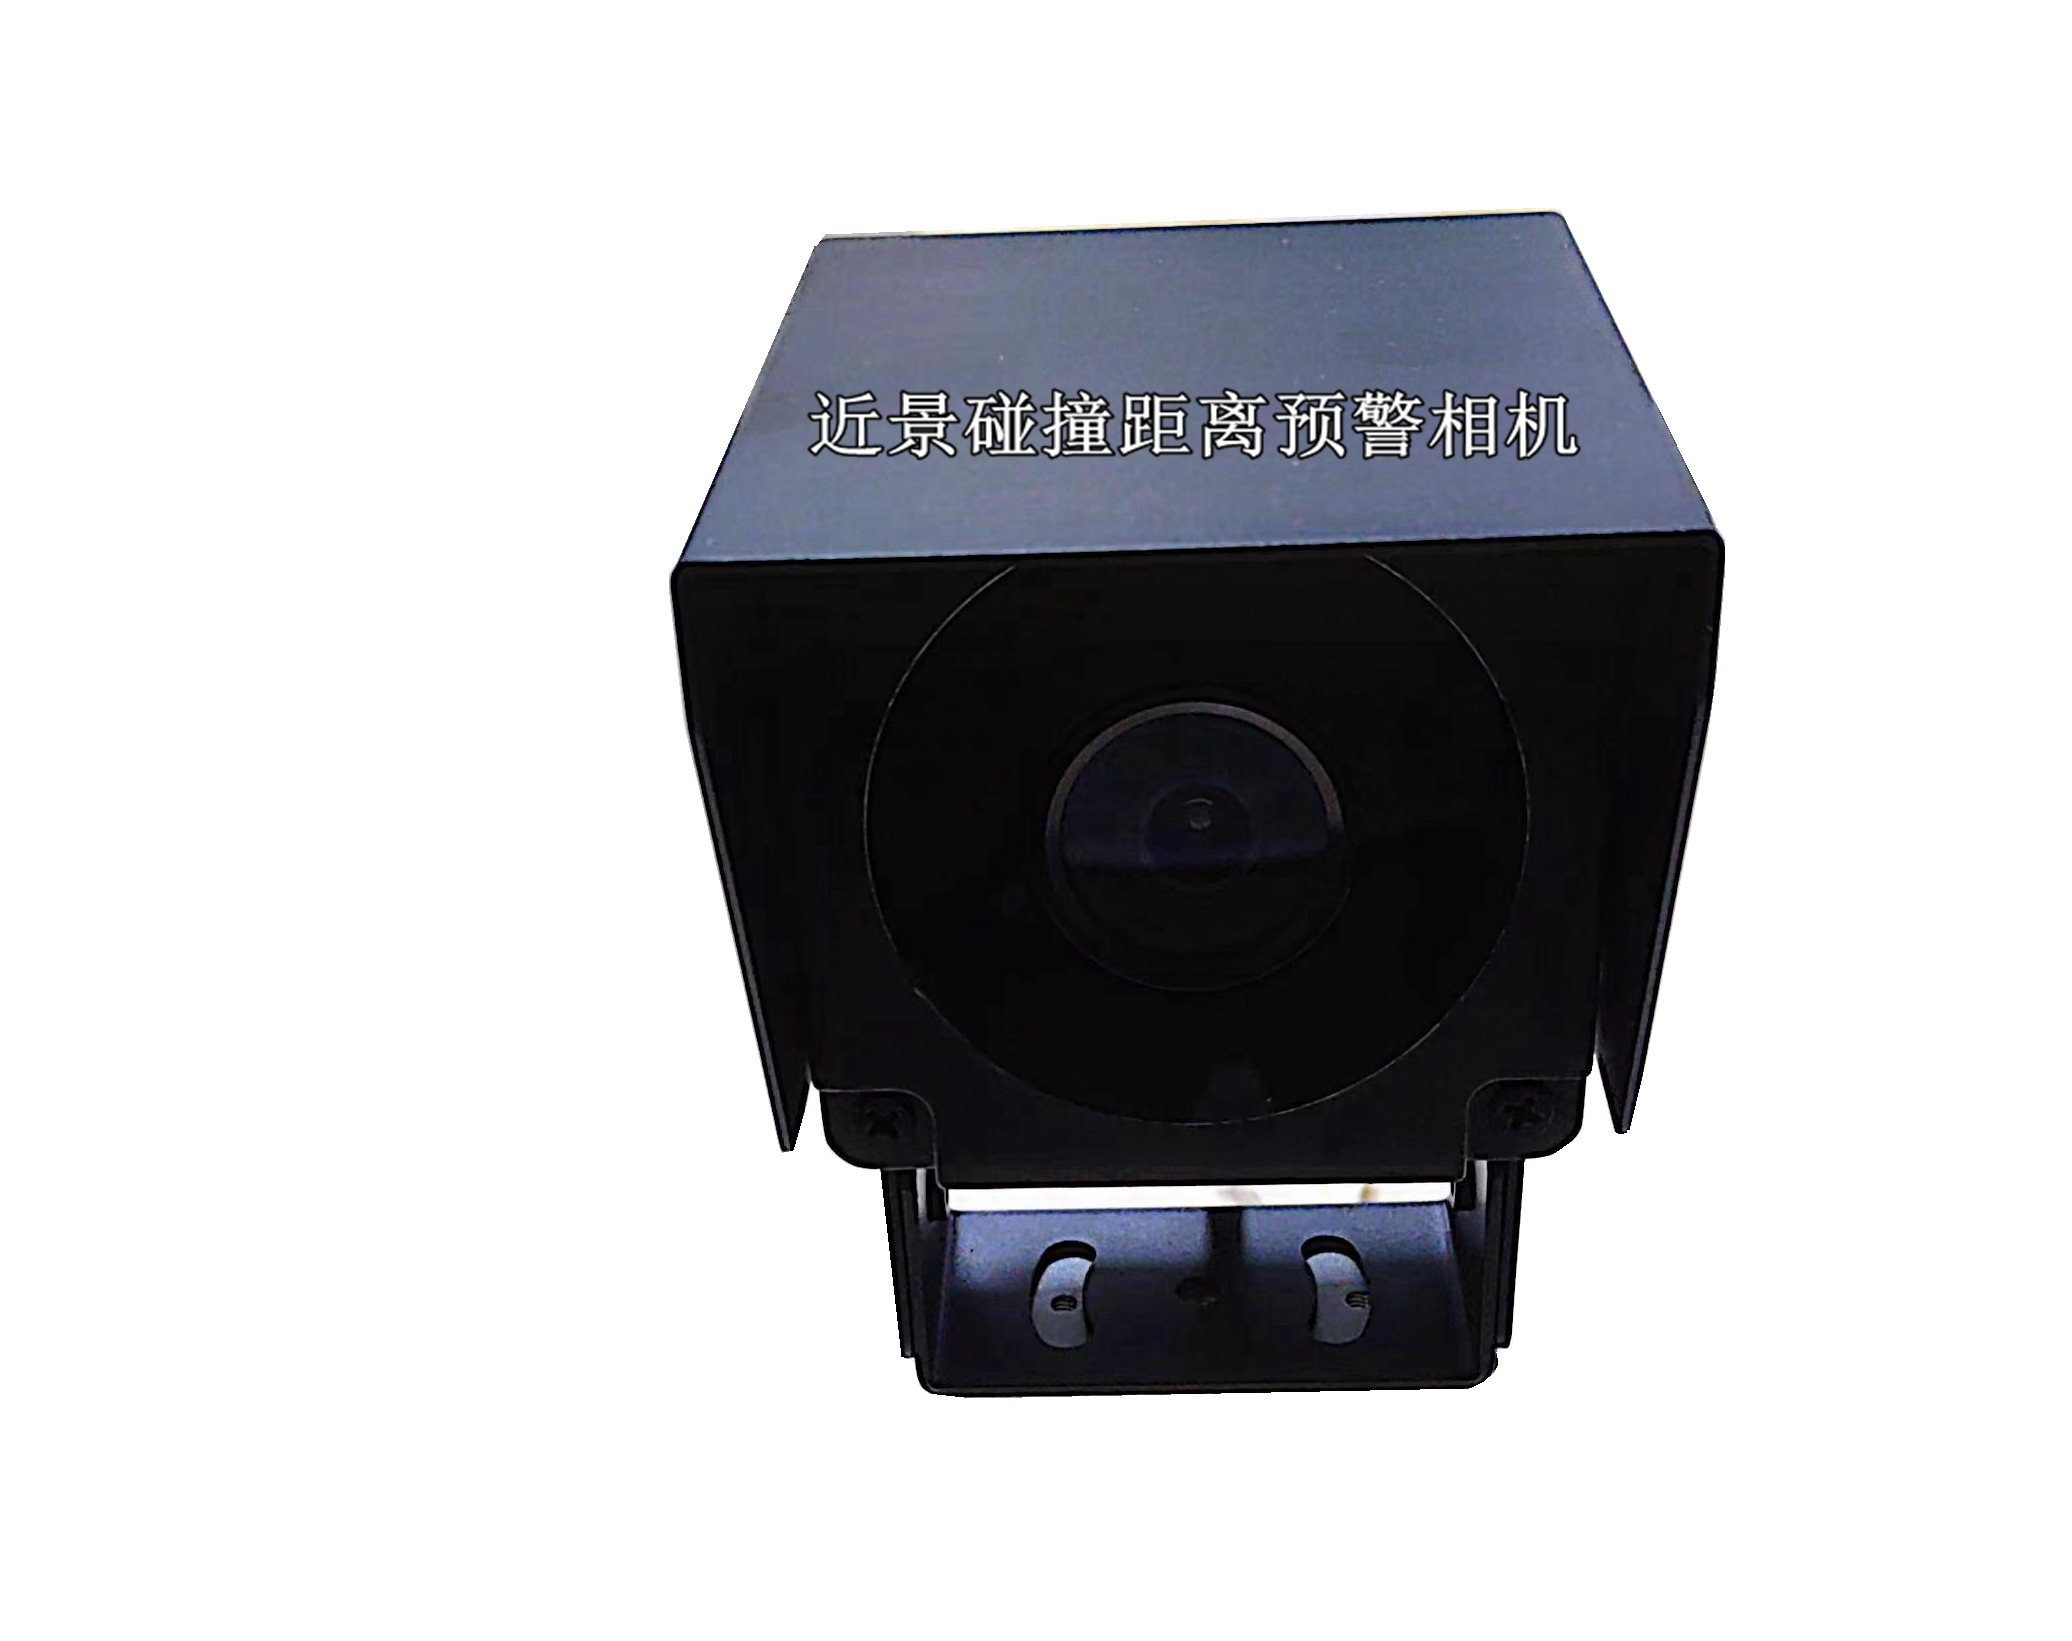 LRHT龙铁高科发布下一代机车视频防火监控系统